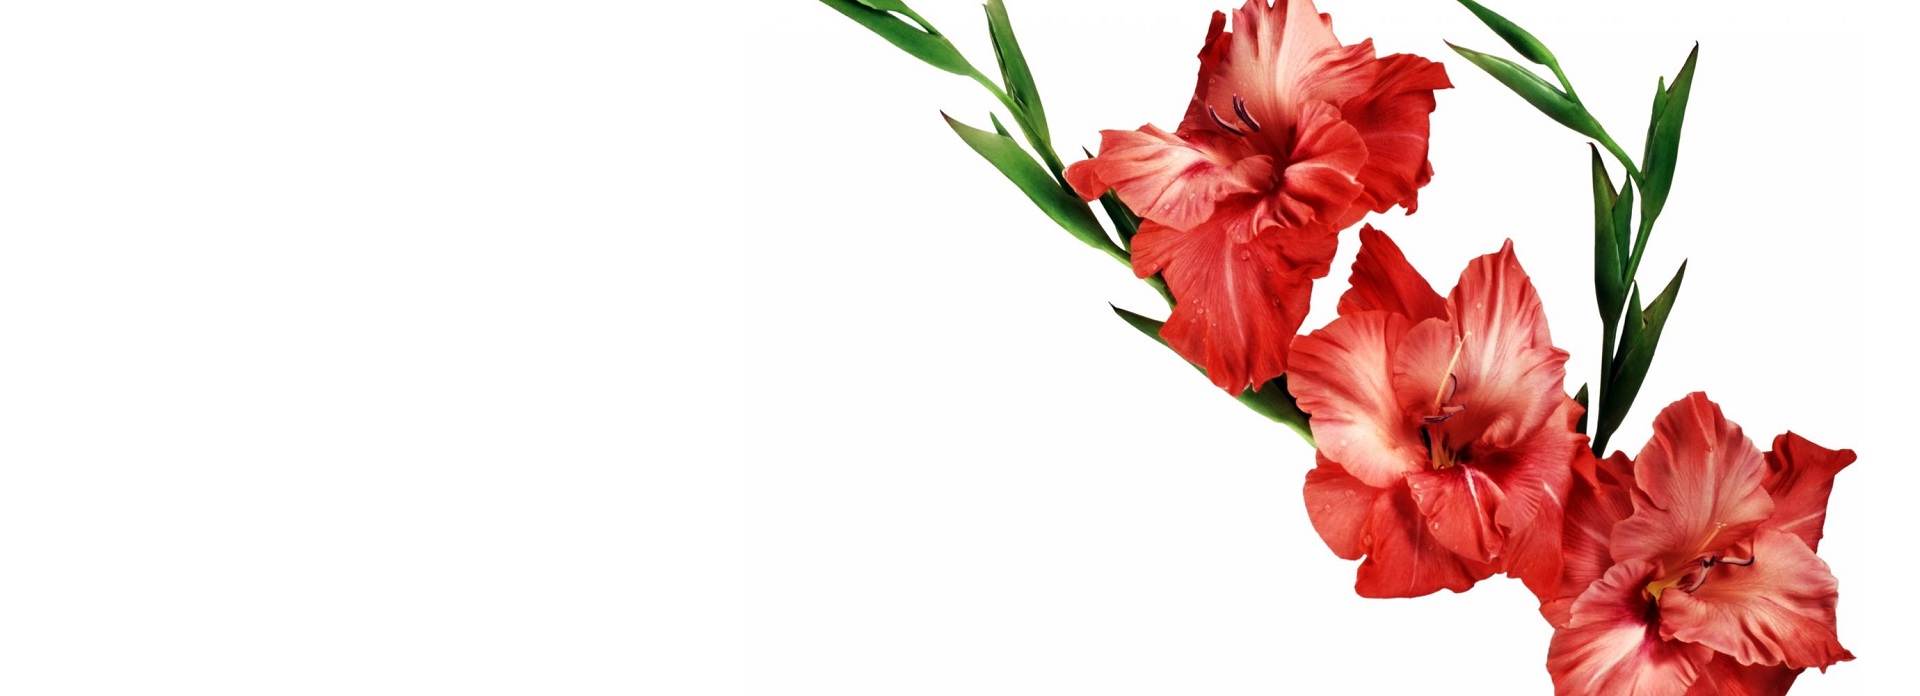 La Rosa y el Gladiolo por Lauren O. Thyme. Un cuento para reflexionar.